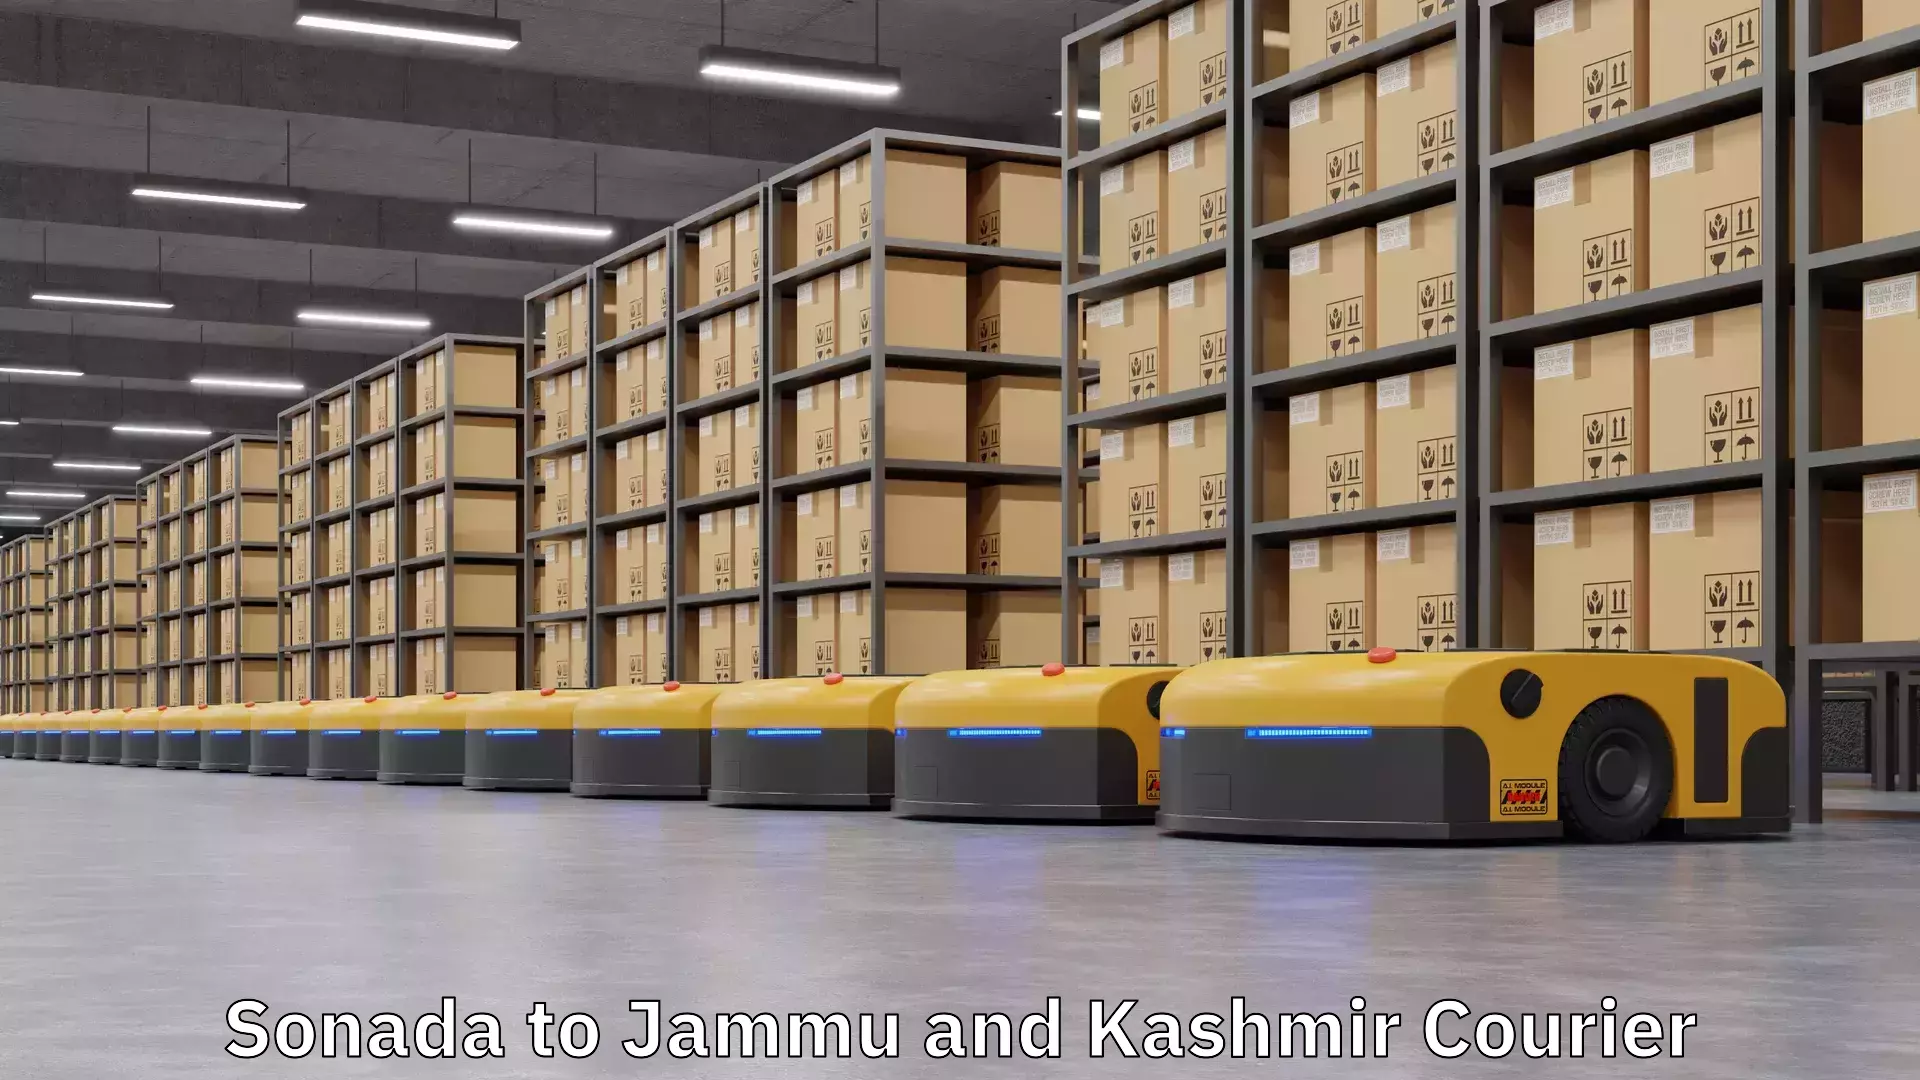 Customer-centric shipping in Sonada to Jammu and Kashmir